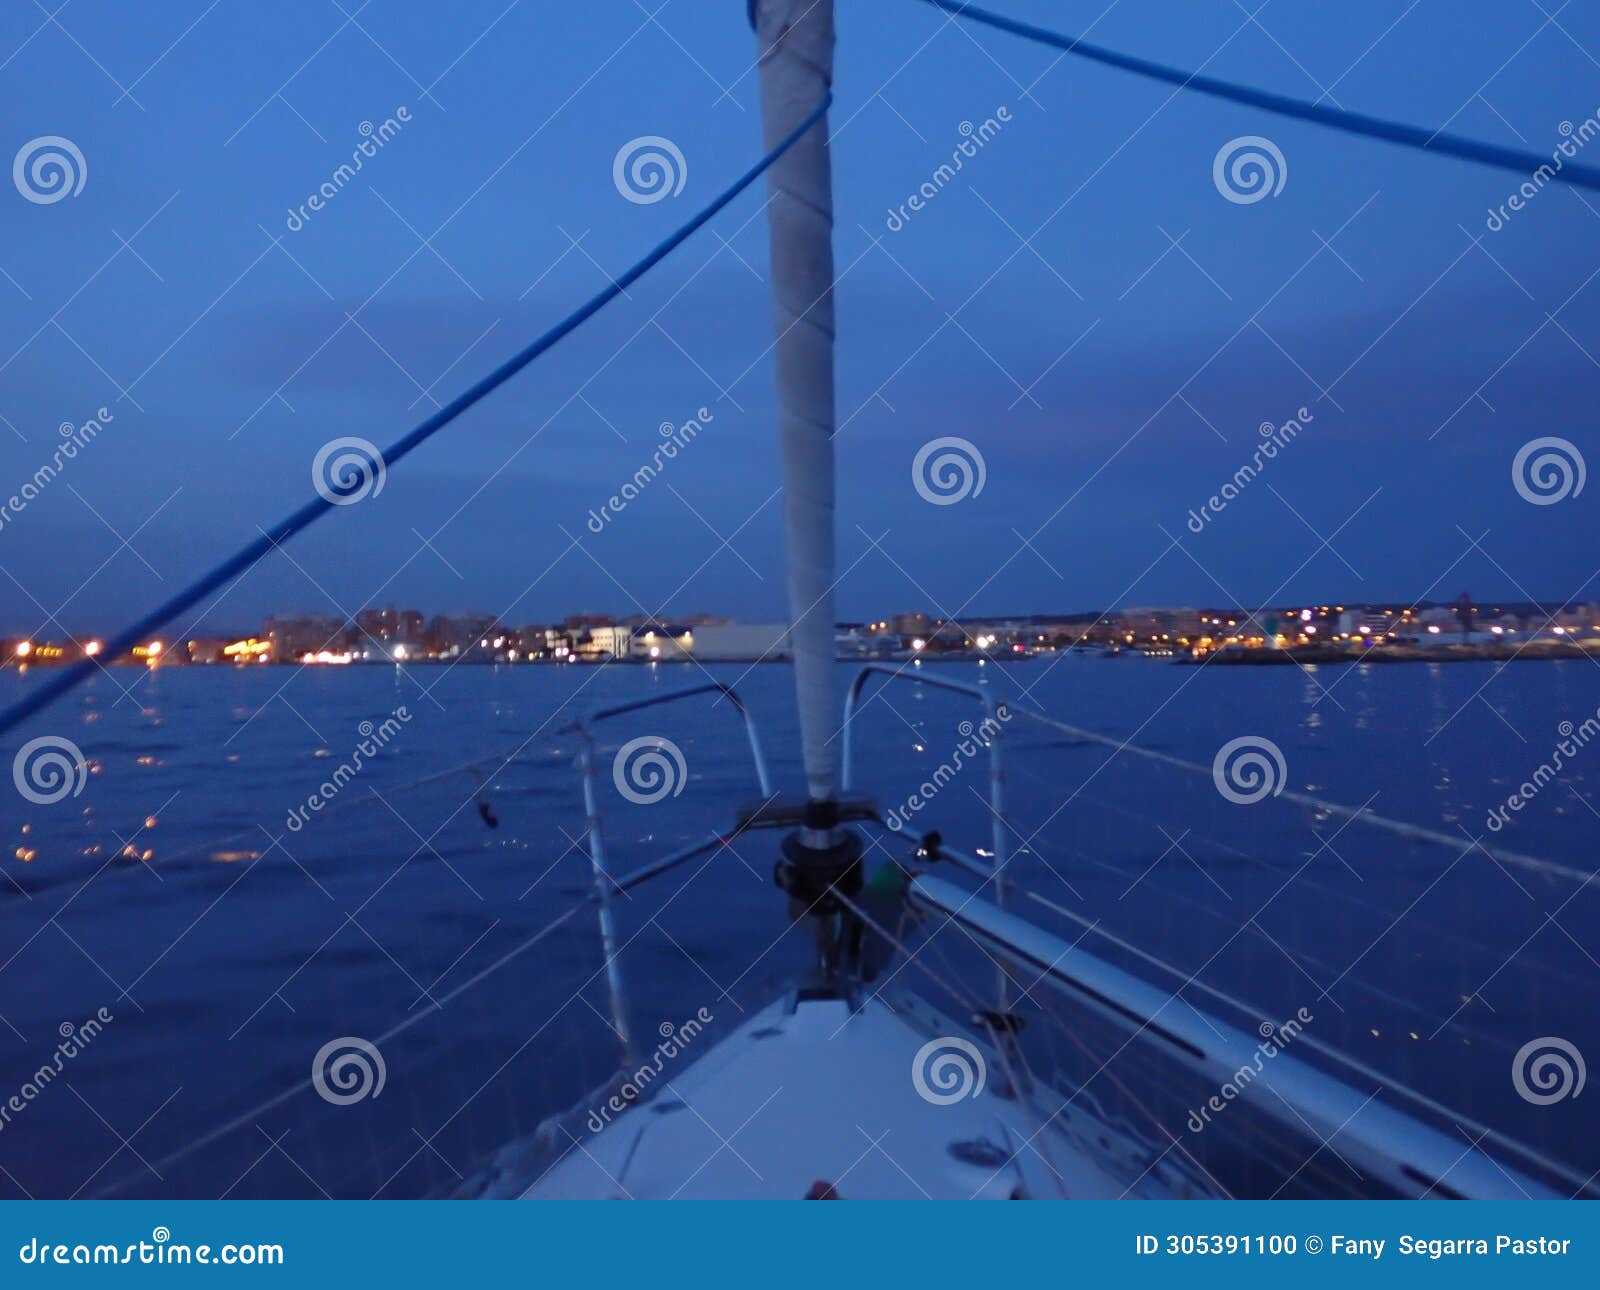 at nightfall, the sailboat arrives at the port